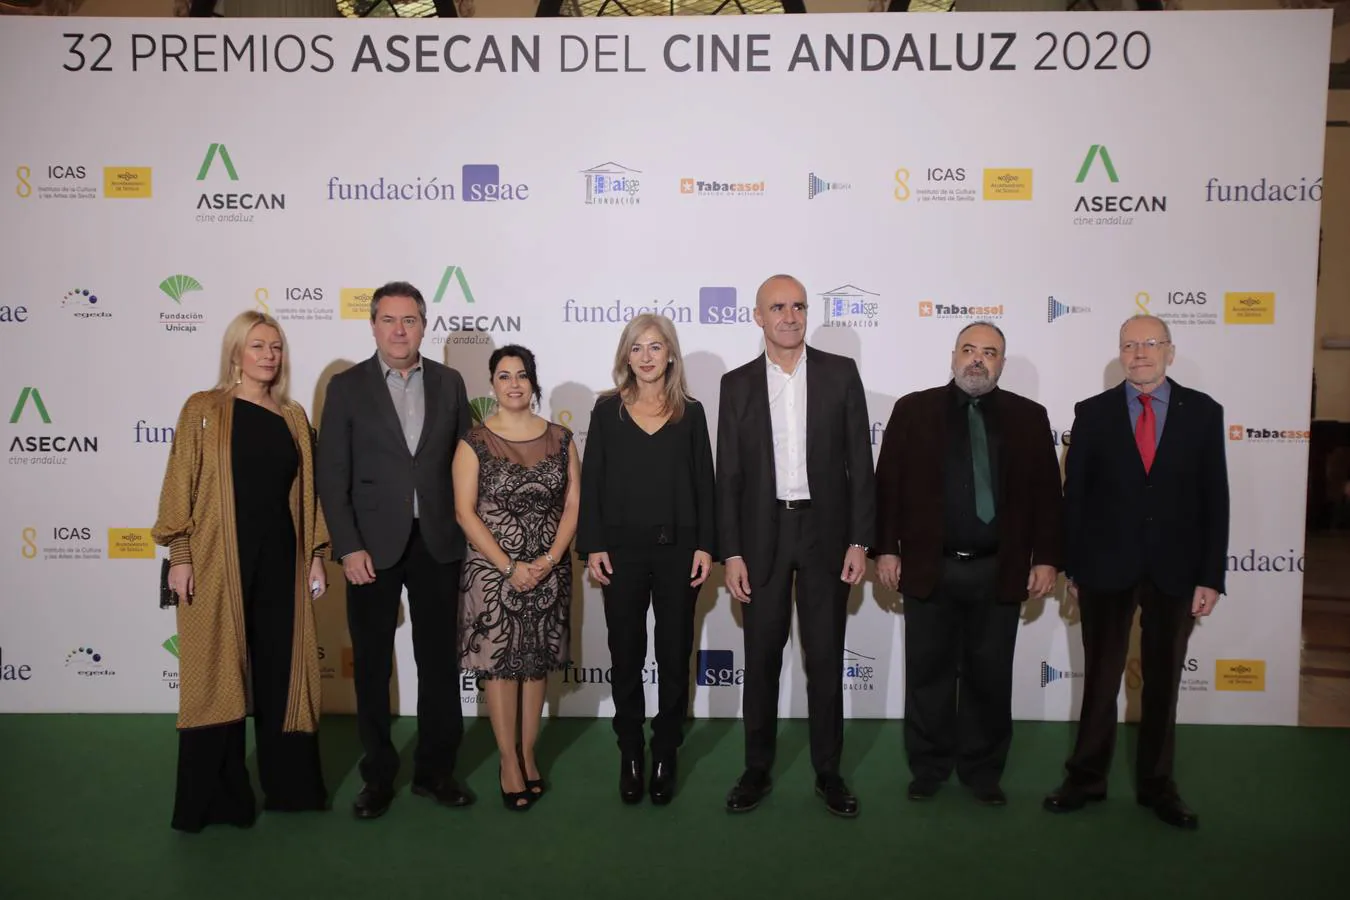 La pasarela de la fiesta del cine andaluz, en imágenes